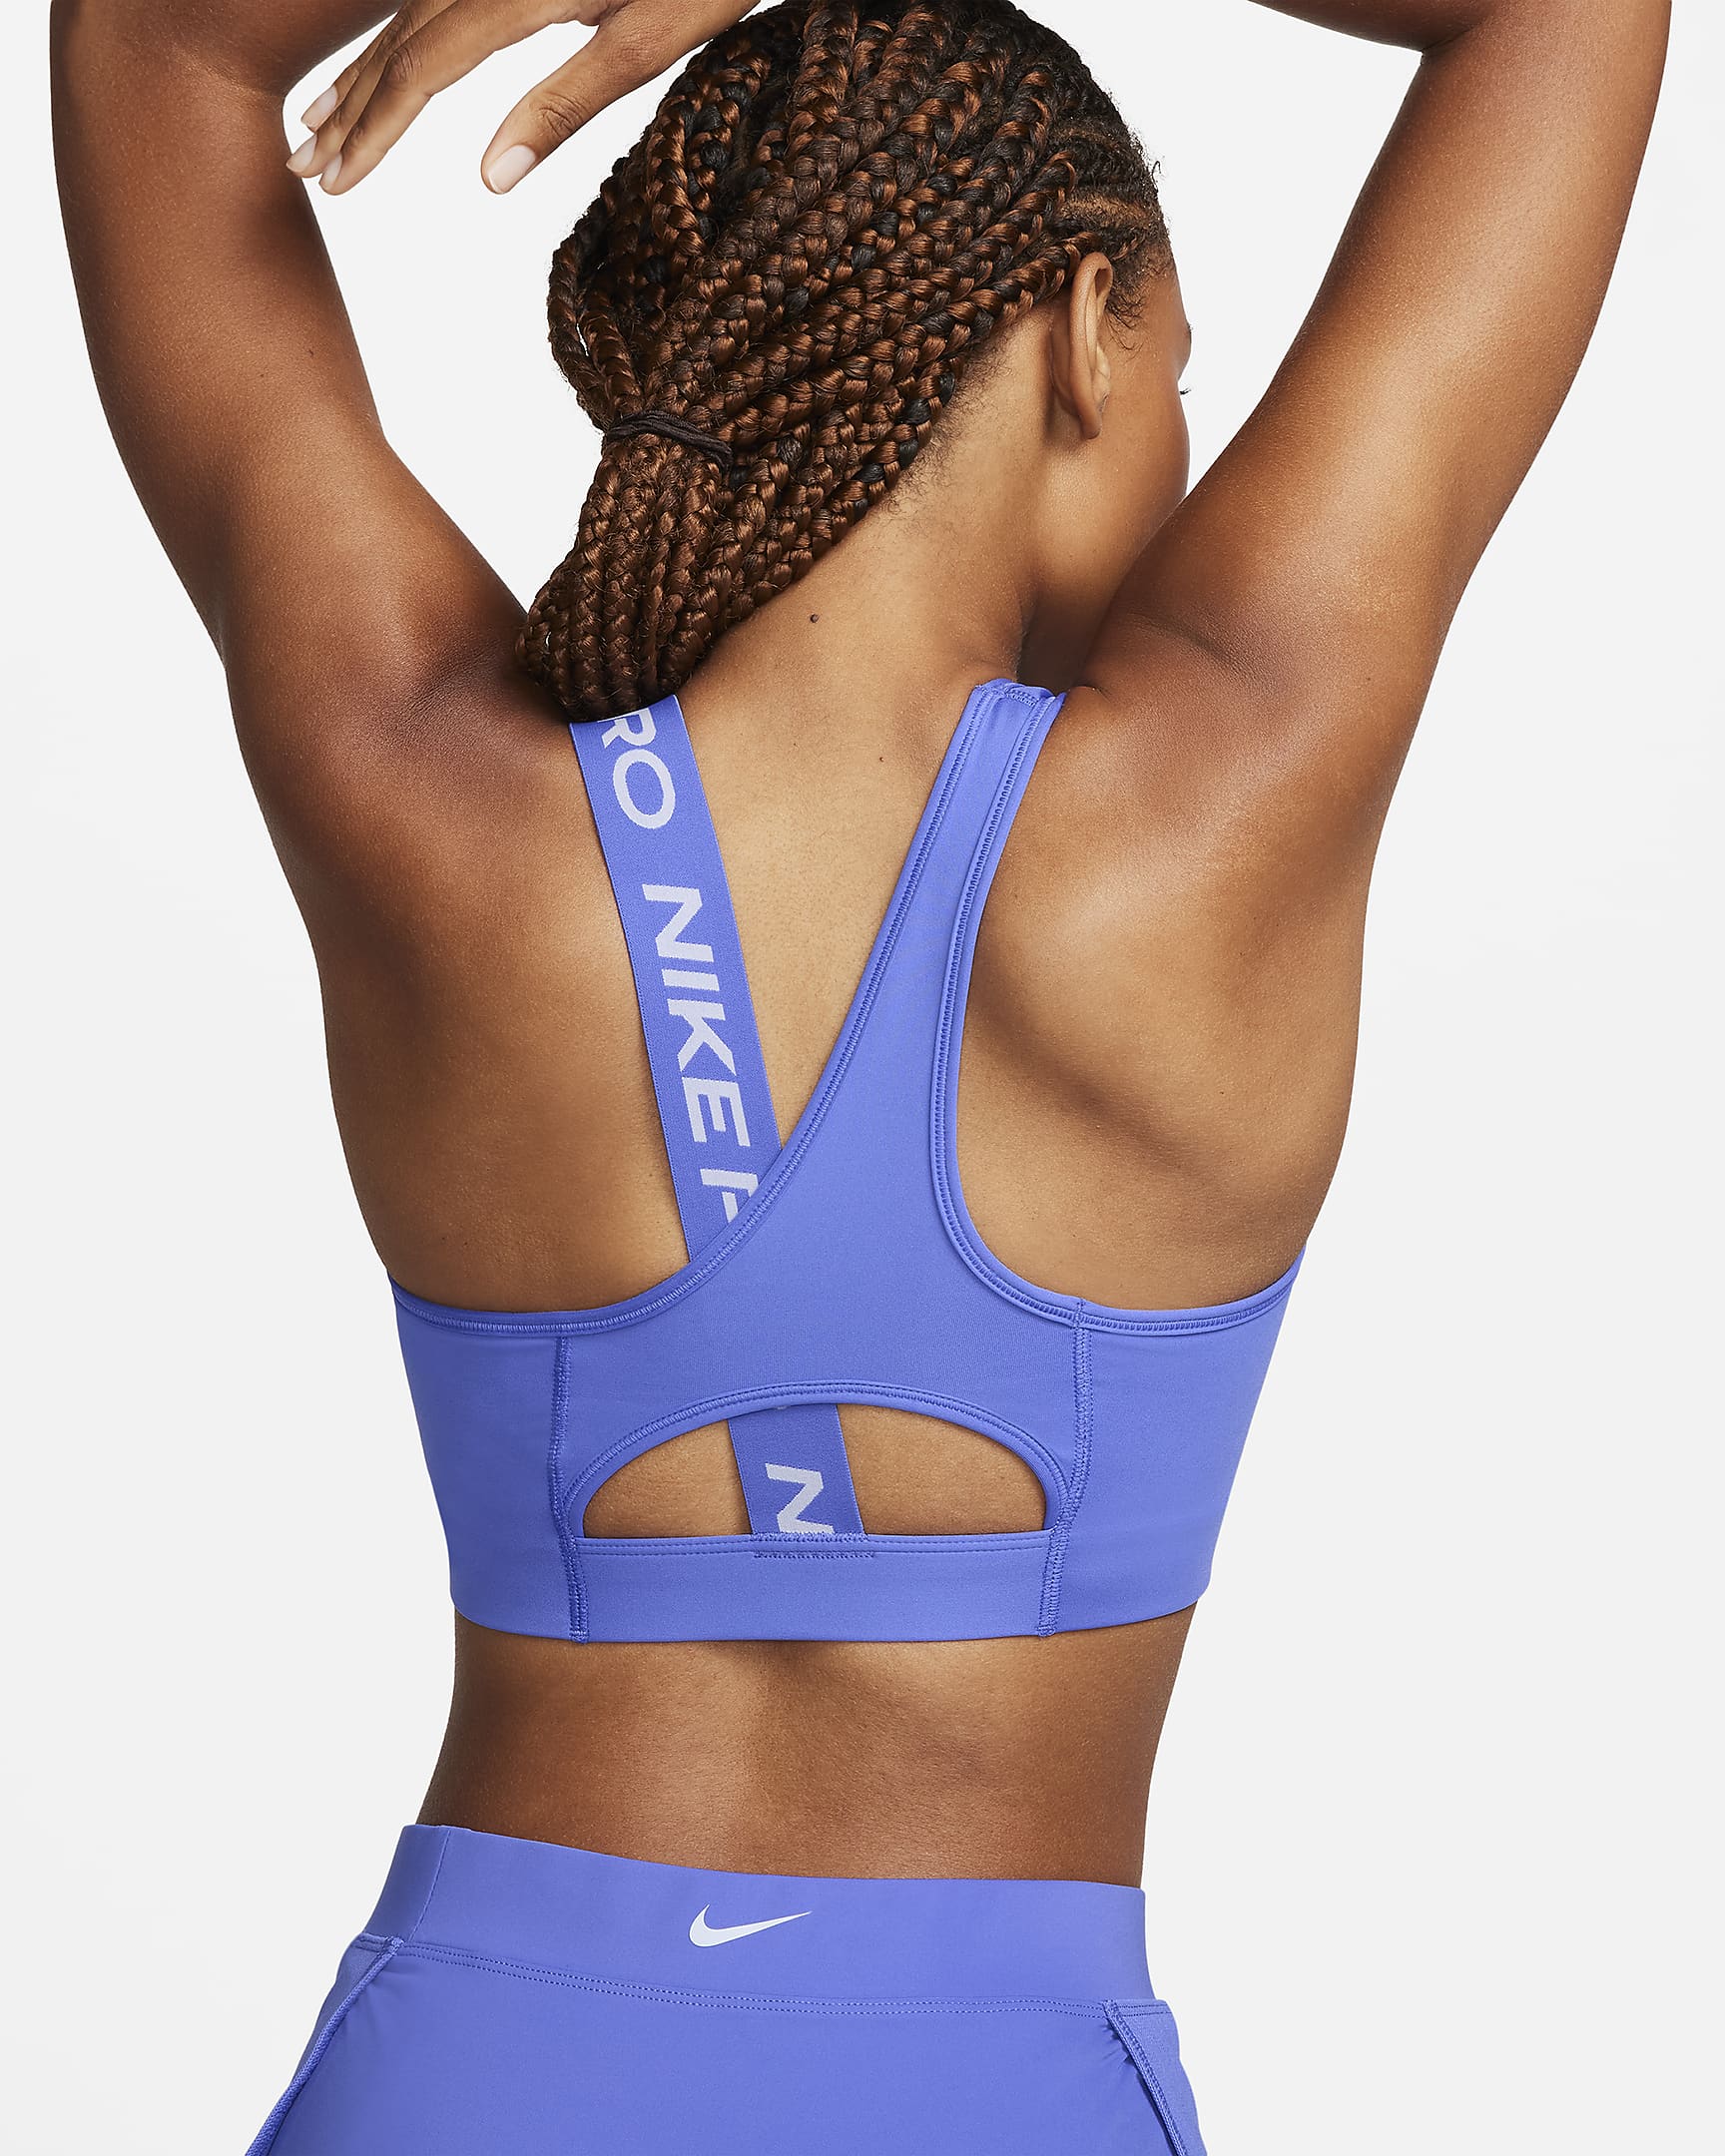 Nike Women's Non-Padded Asymmetrical Dri-FIT Sports Bra